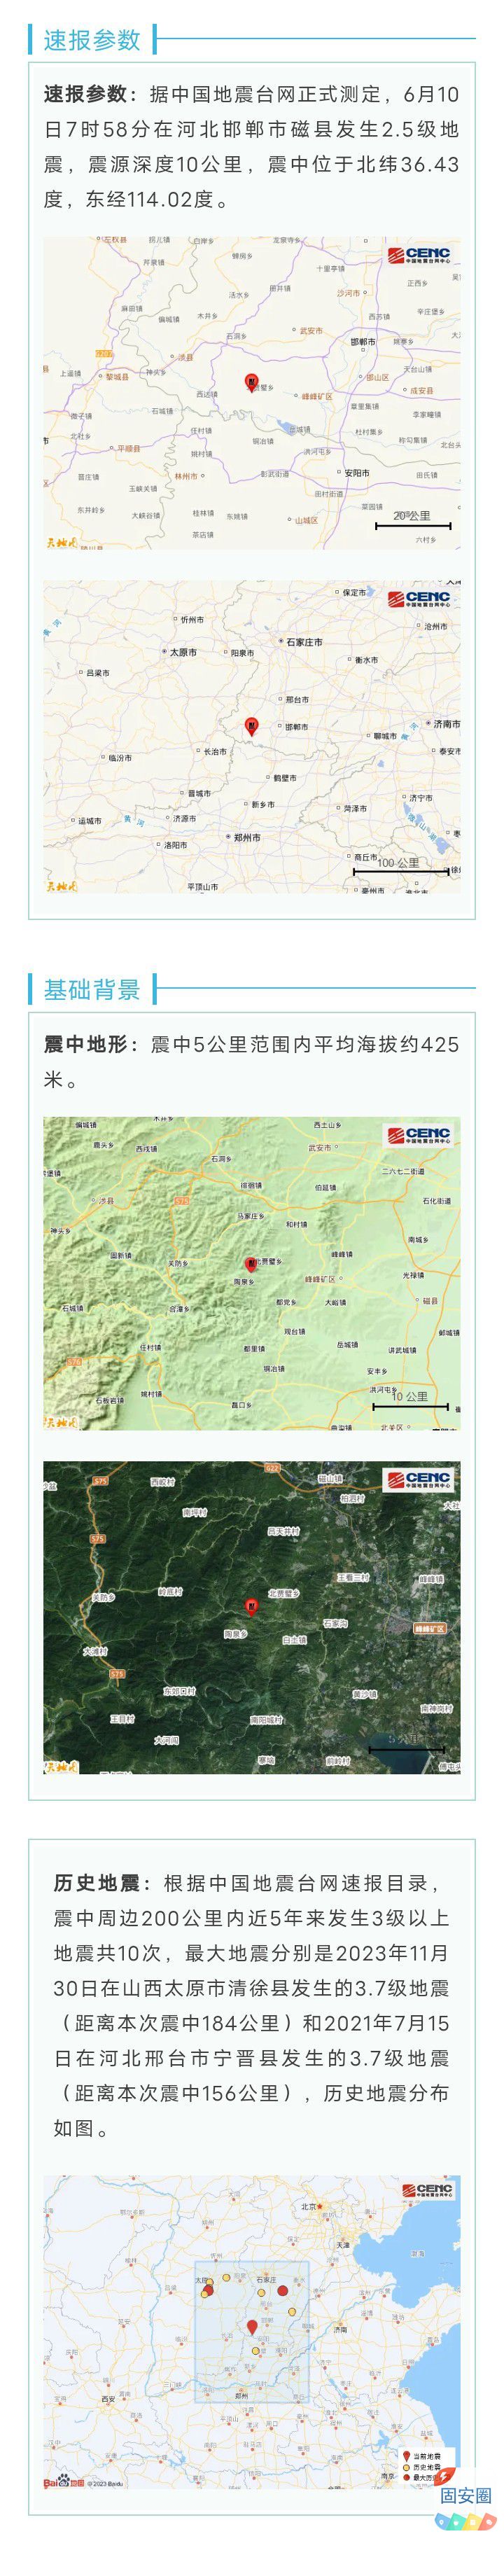 河北邯郸市磁县发生2.5级地震7201 作者:峰华花园 帖子ID:316339 